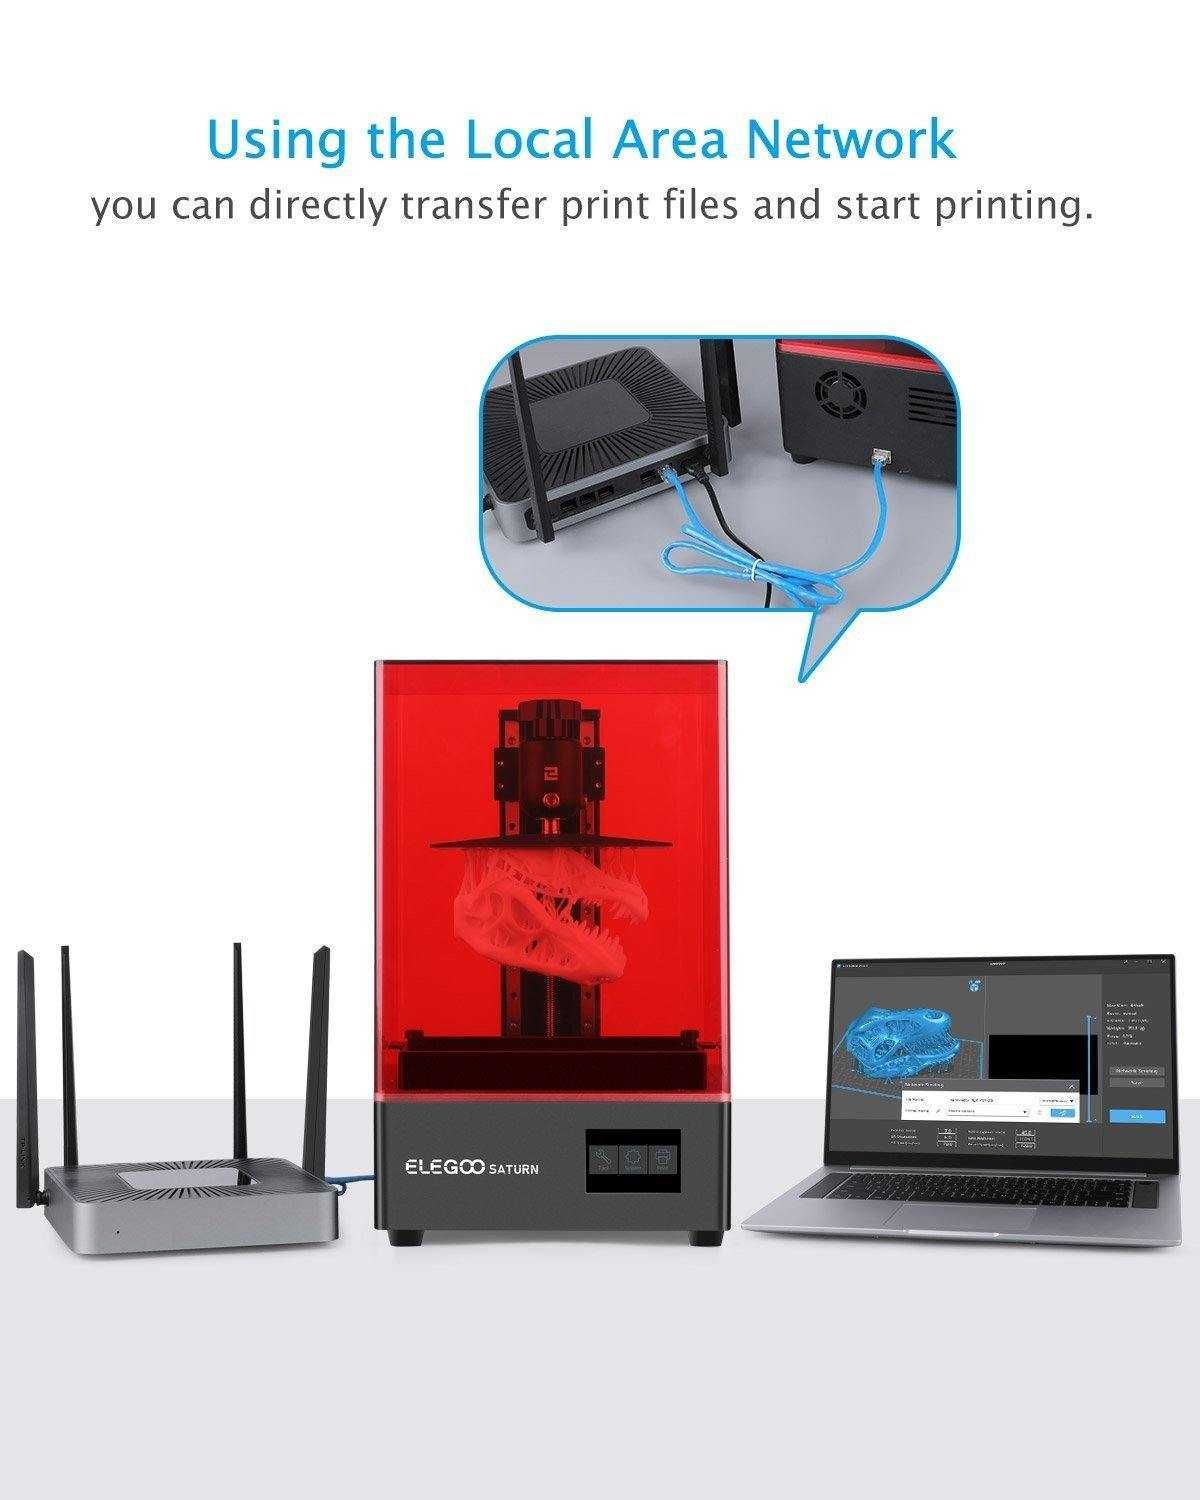 3D Принтер ELEGOO SATURN новий гарантія